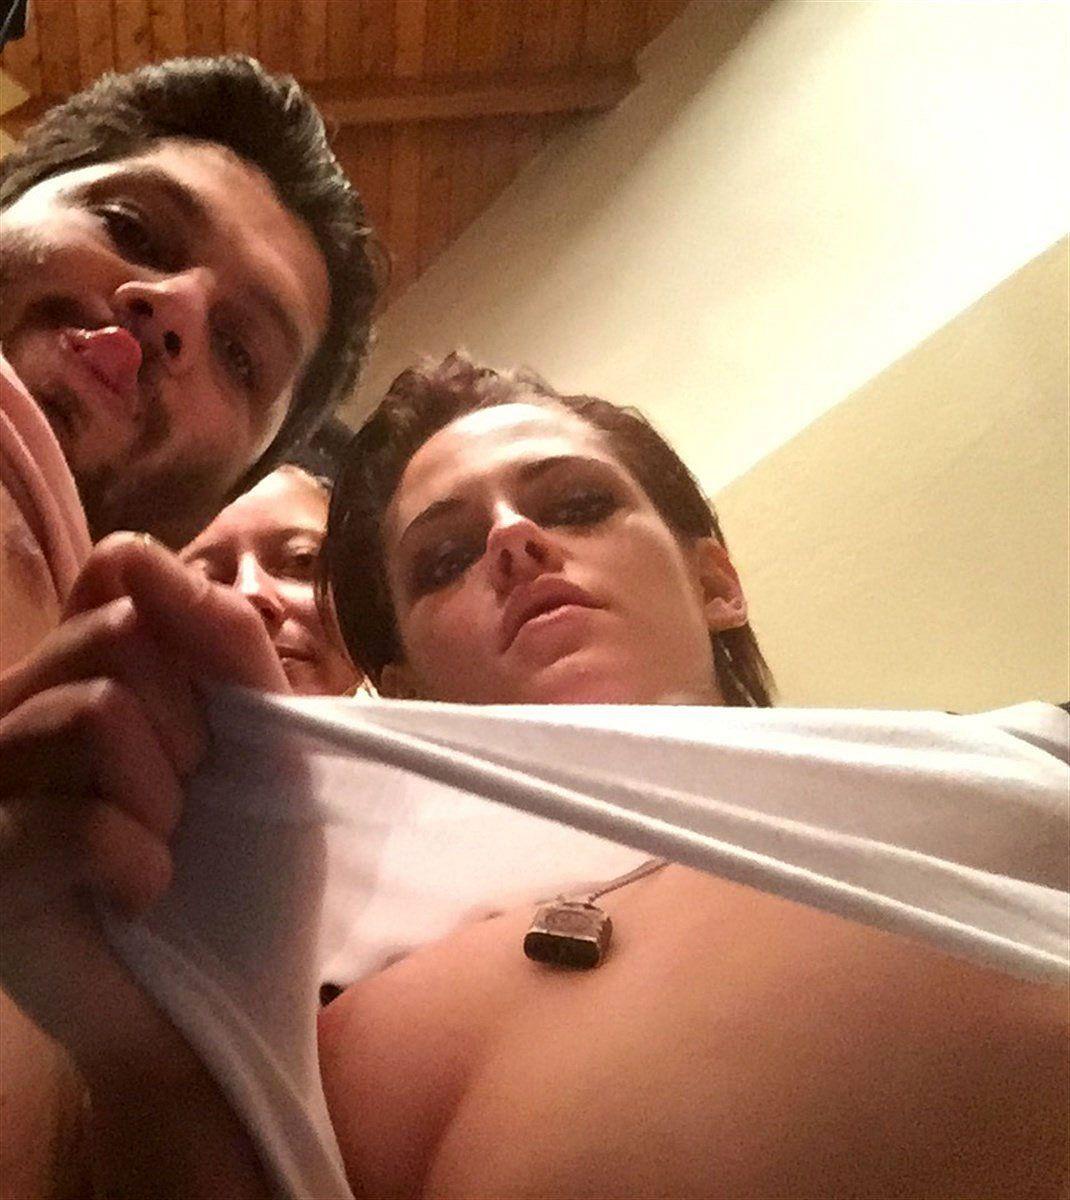 Kristen stewart leaked naked pics